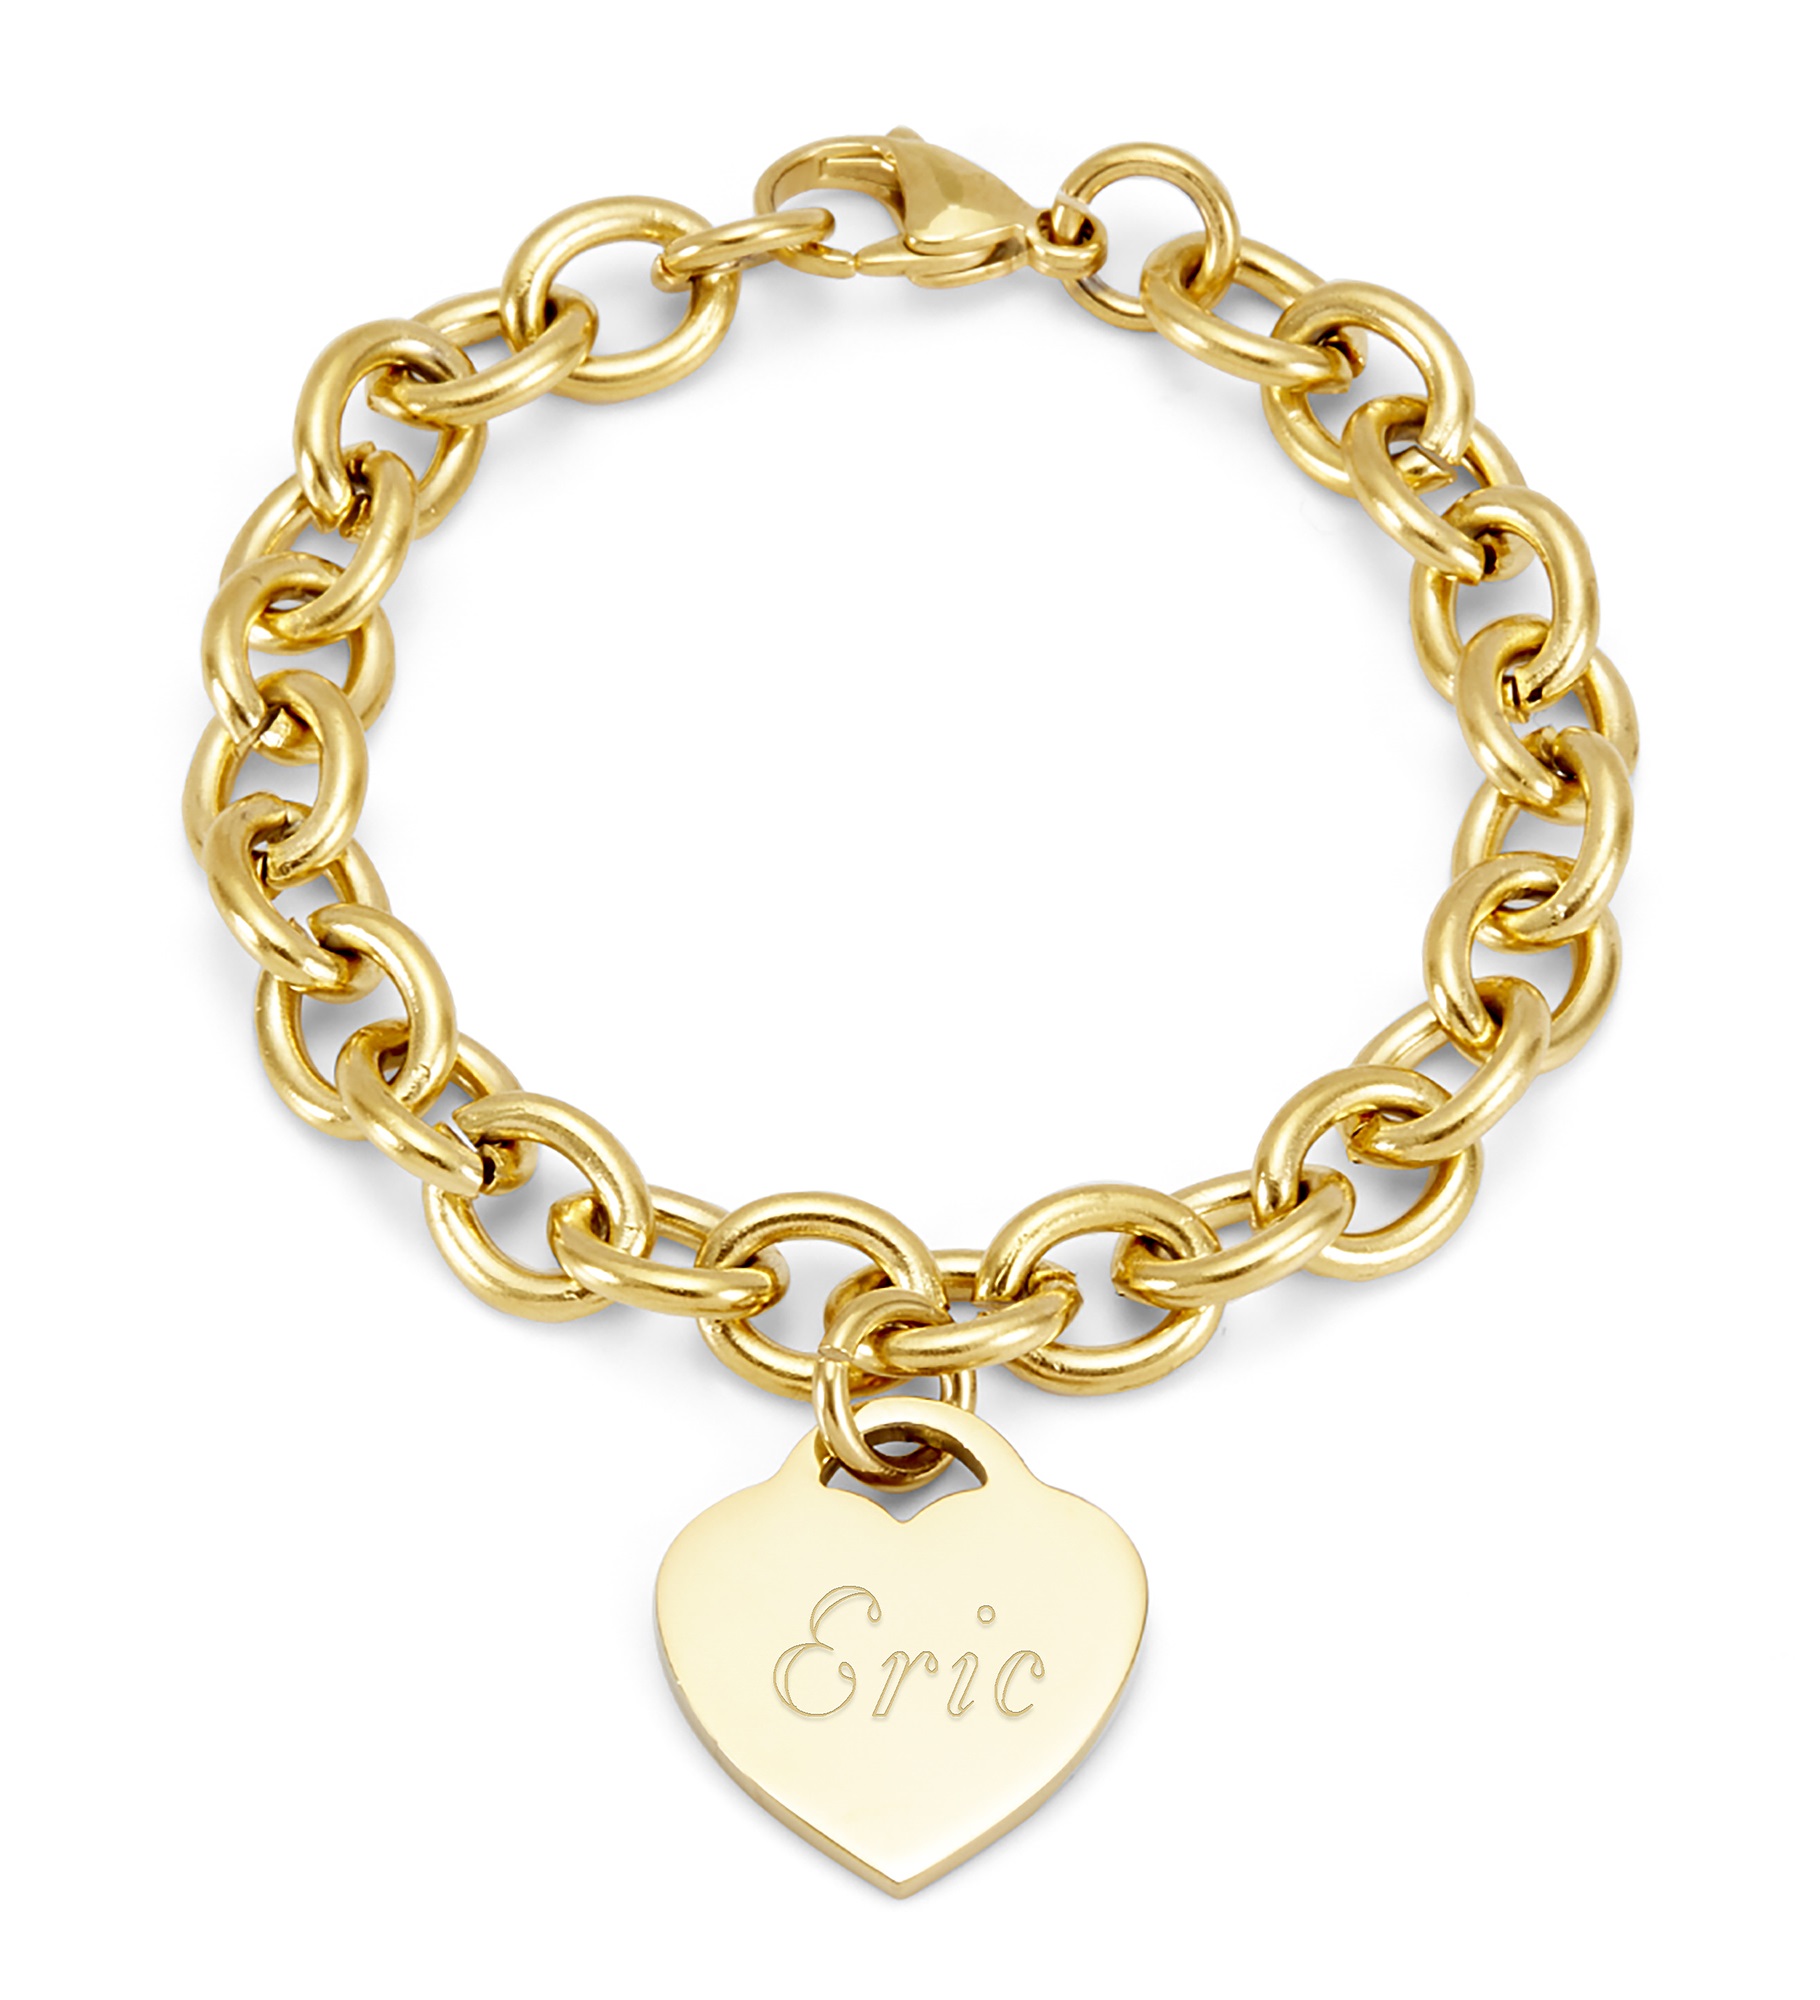 Engraved Heart Link Chain Bracelet